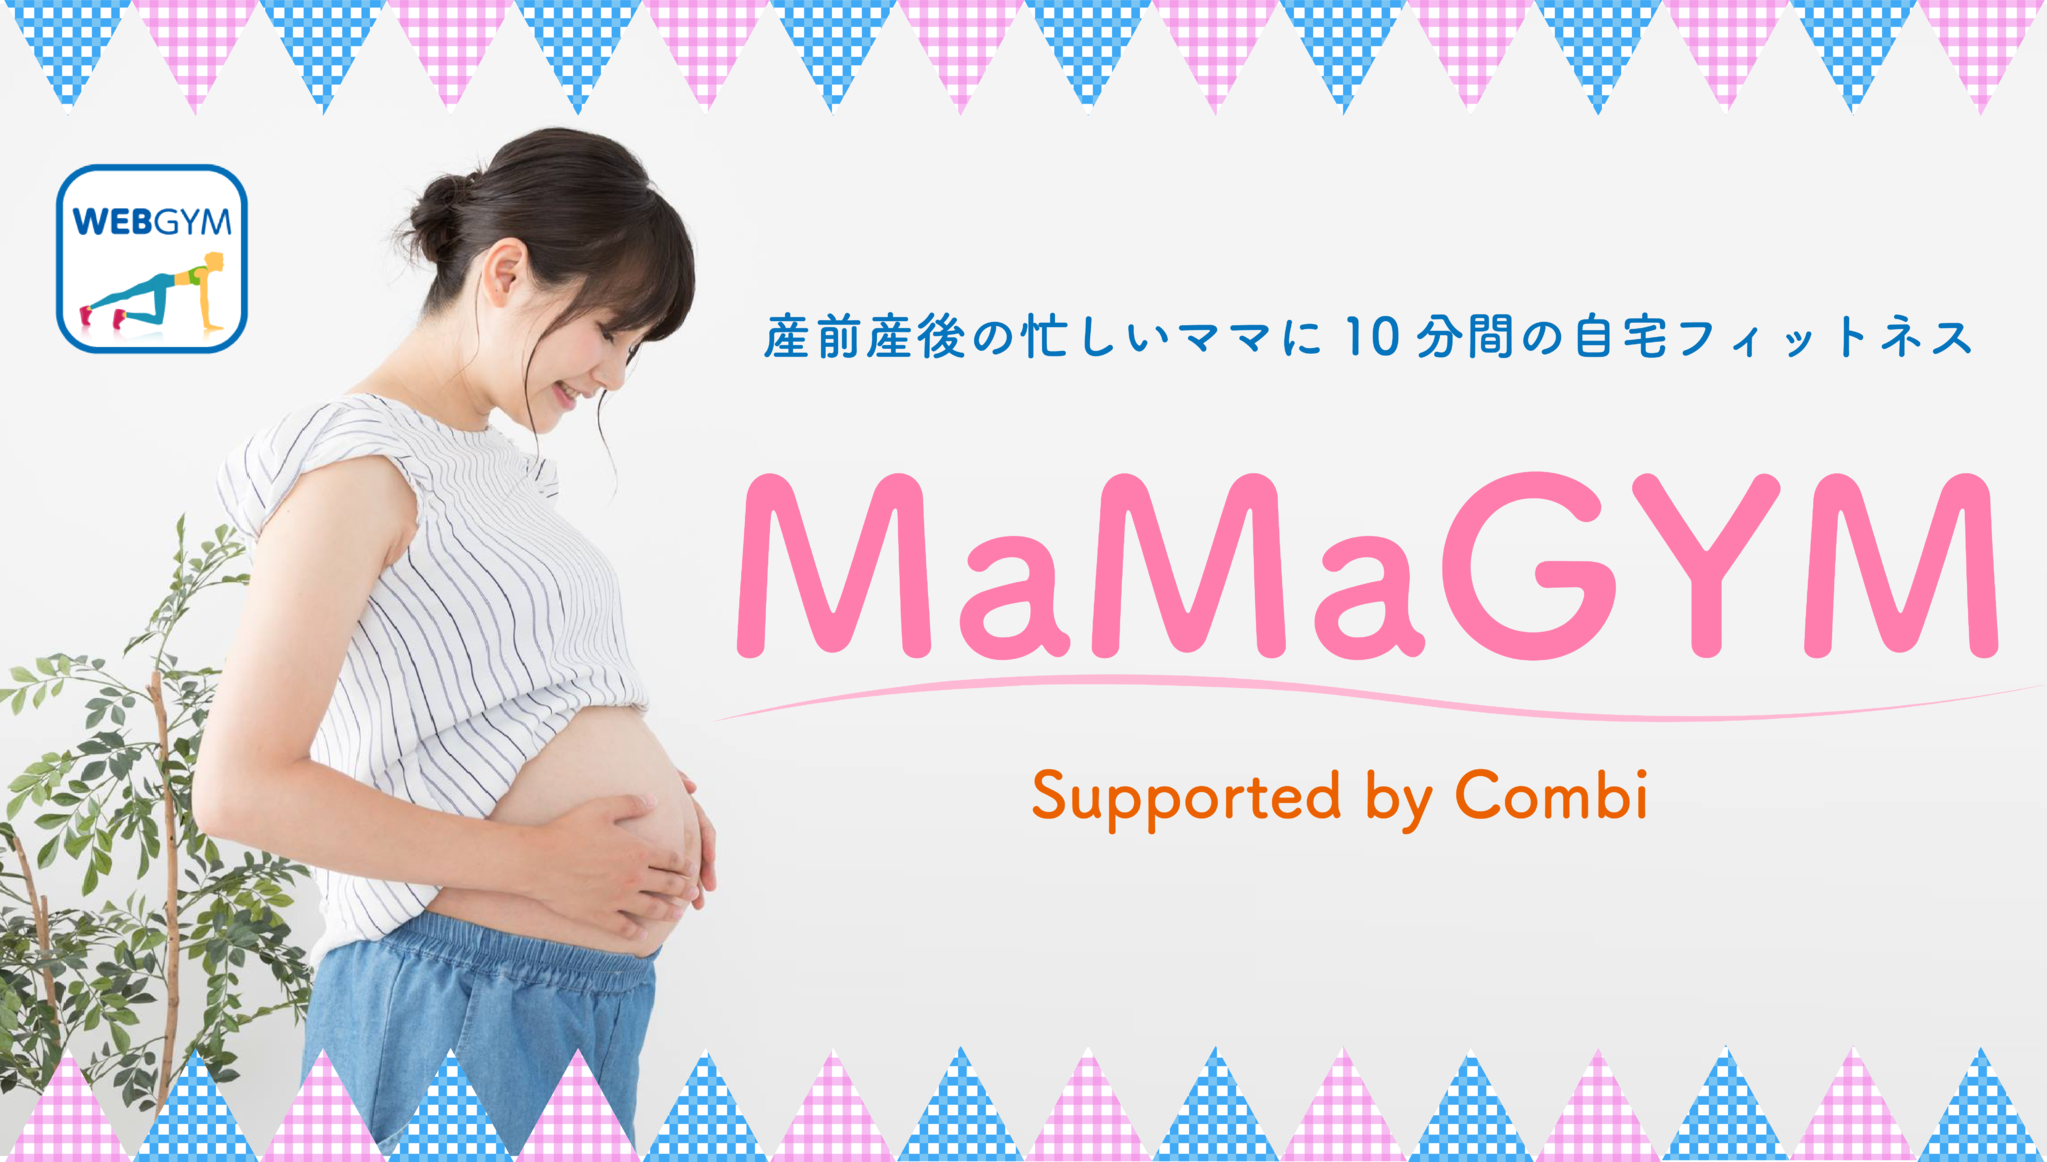 産前産後のママ向け自宅フィットネス Mamagym 動画 無料公開 コンビ株式会社のプレスリリース